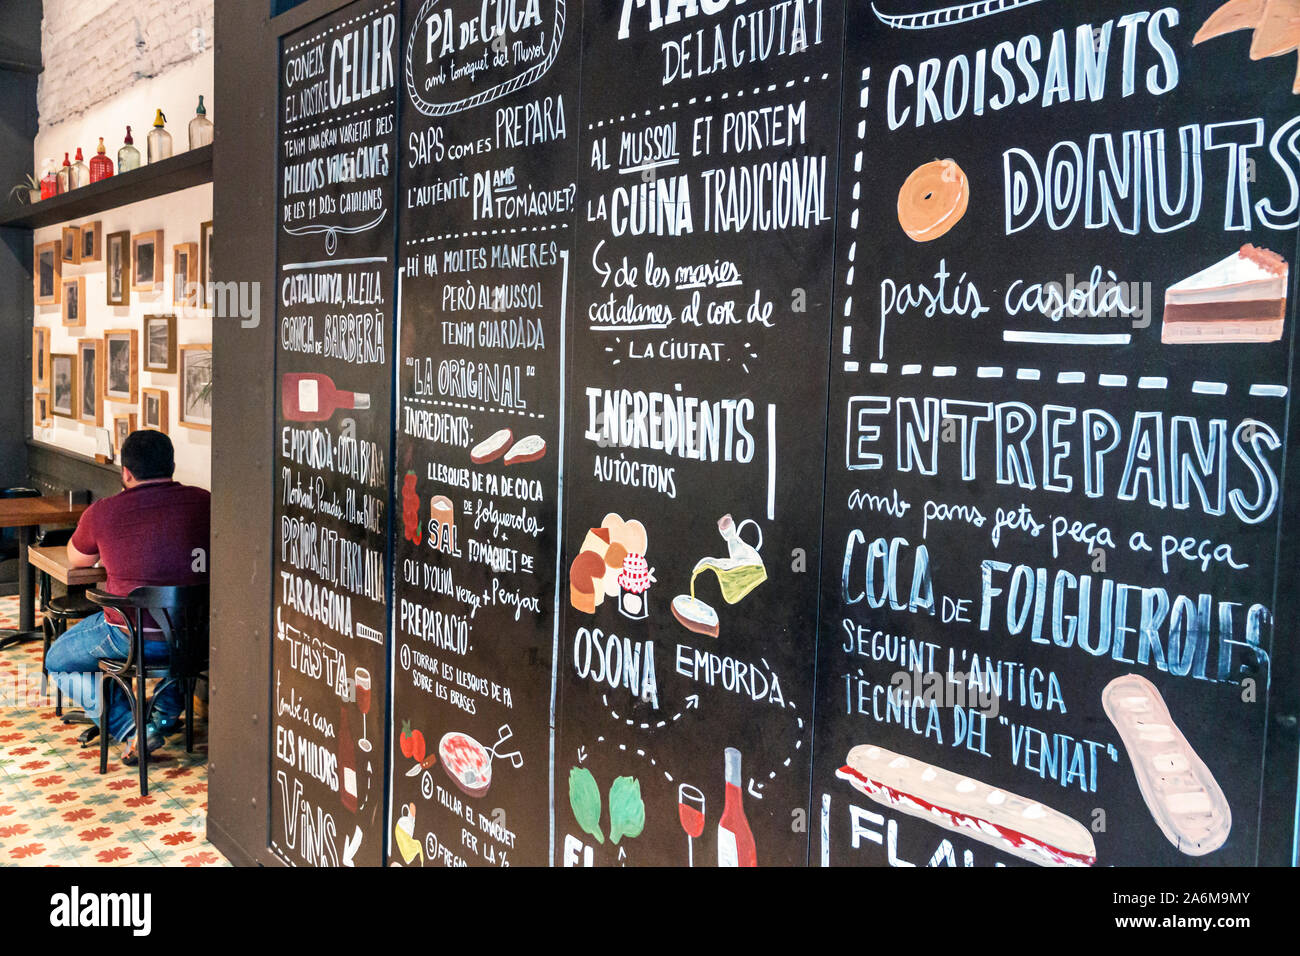 Barcelona Spanien,Catalonia Eixample,Café, Restaurant,innen,gemaltes Menü,katalanische Sprache,authentisches Essen,ES190901127 Stockfoto